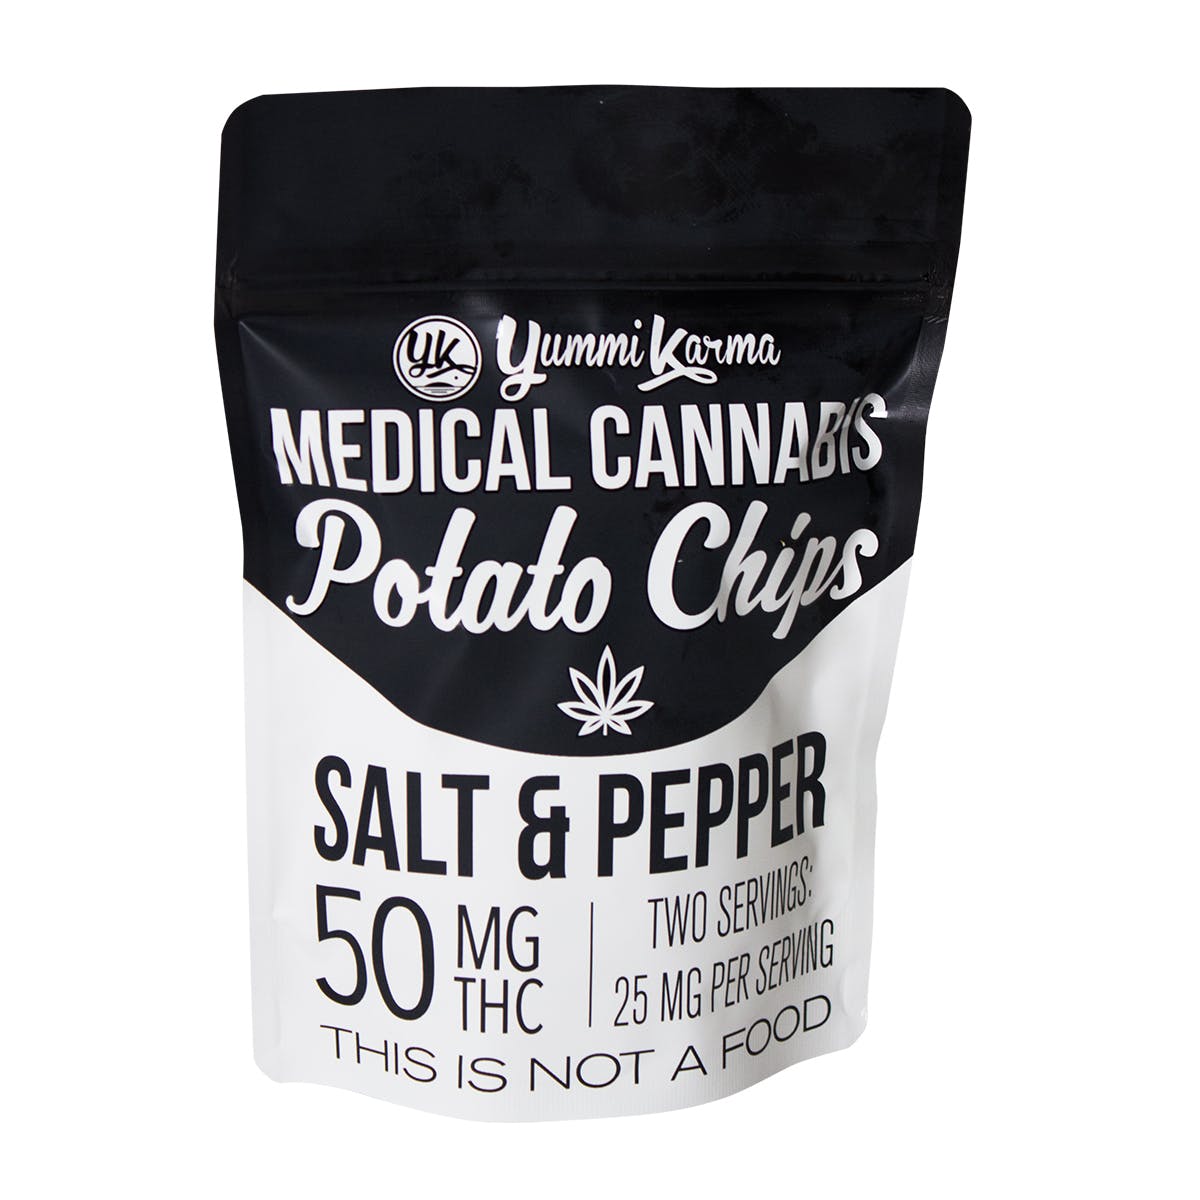 Medical Cannabis Potato Chips, Salt & Pepper 50mg